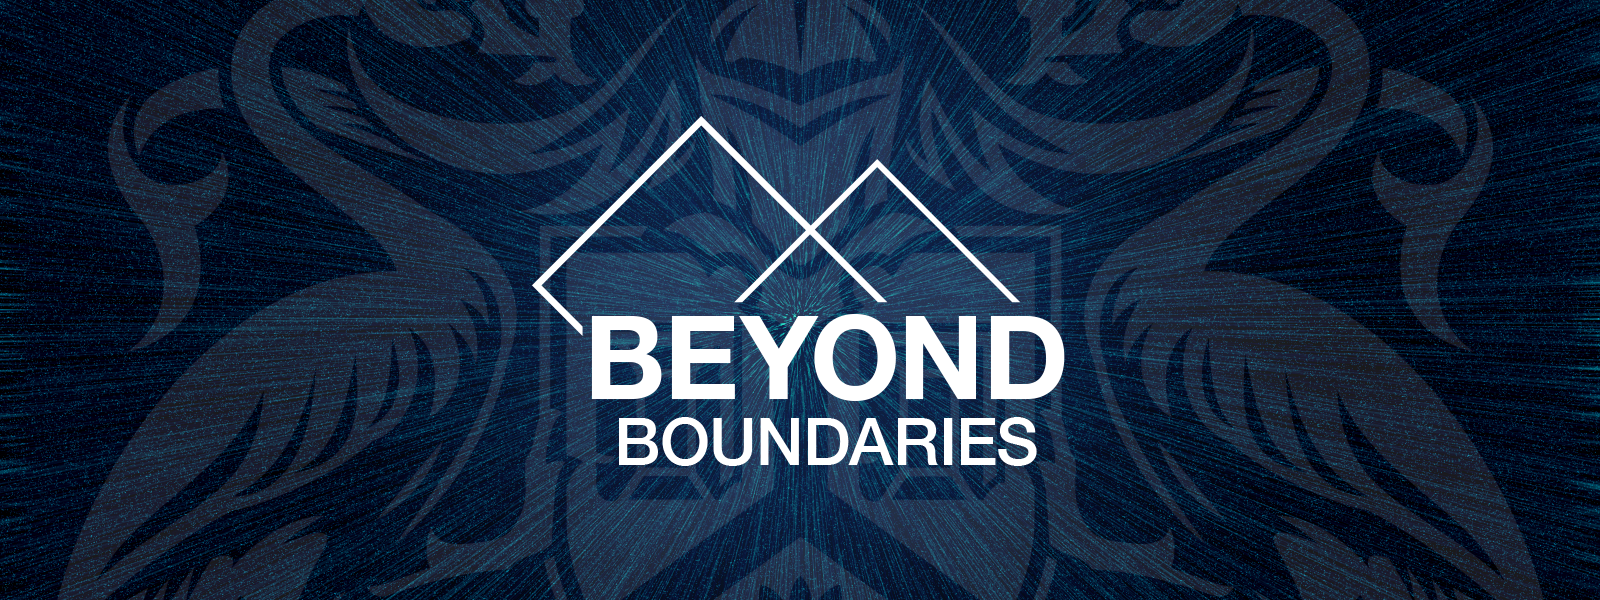 Beyond Boundaries Page Main Image